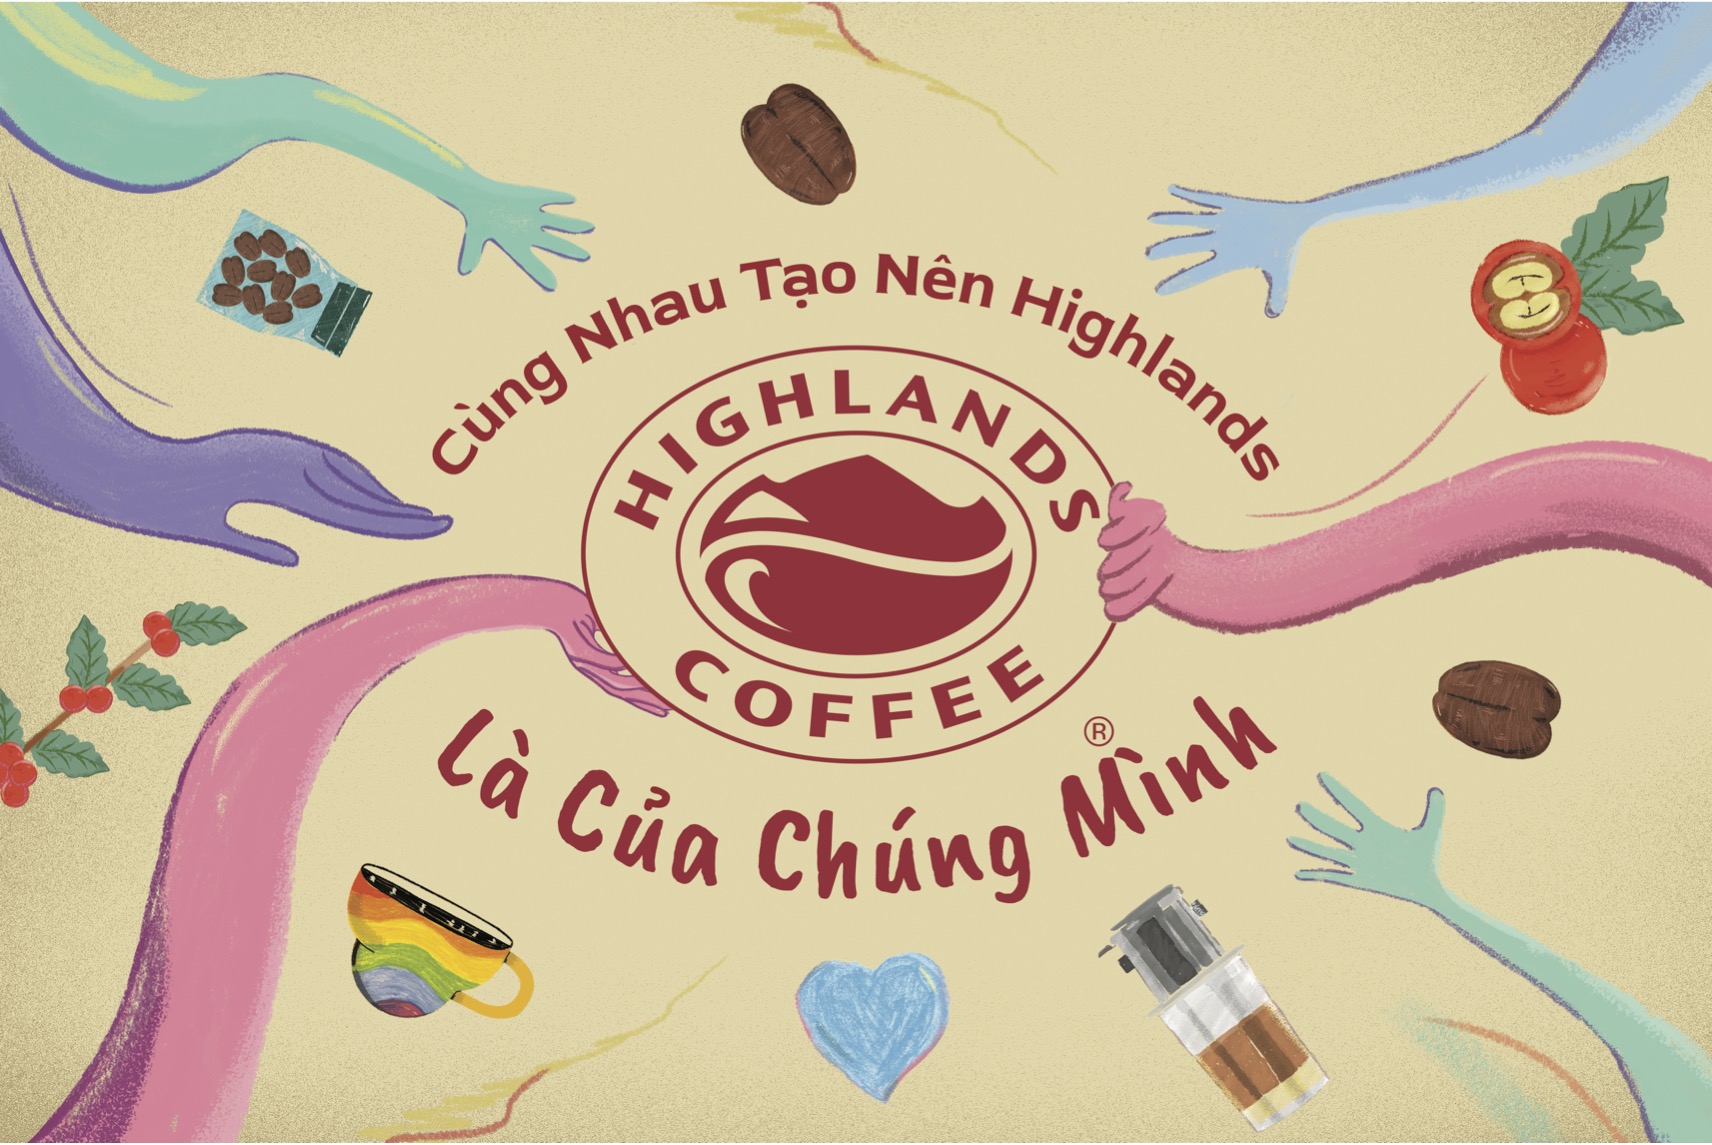 Highlands Coffee đánh dấu bước “chuyển mình” hướng đến cộng đồng cùng logo và thông điệp mới - 1